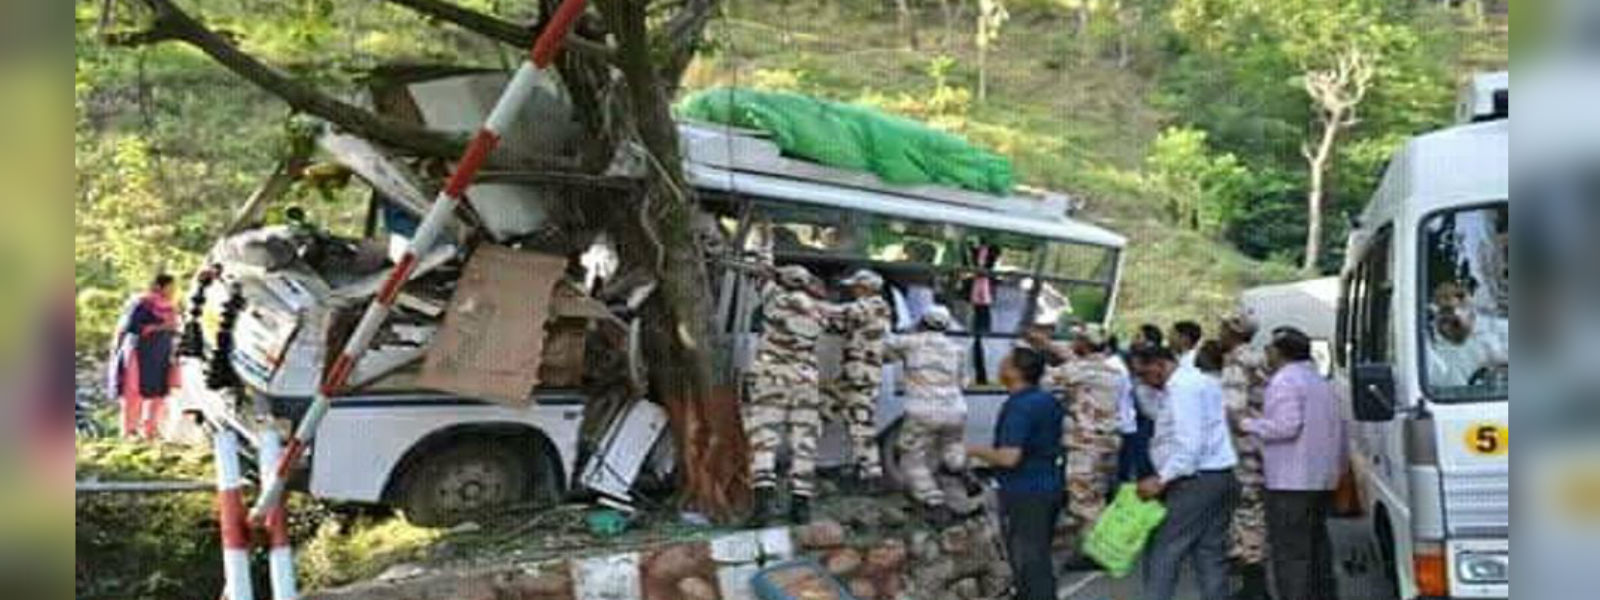 48 people killed when bus skidded in Uttarakhand